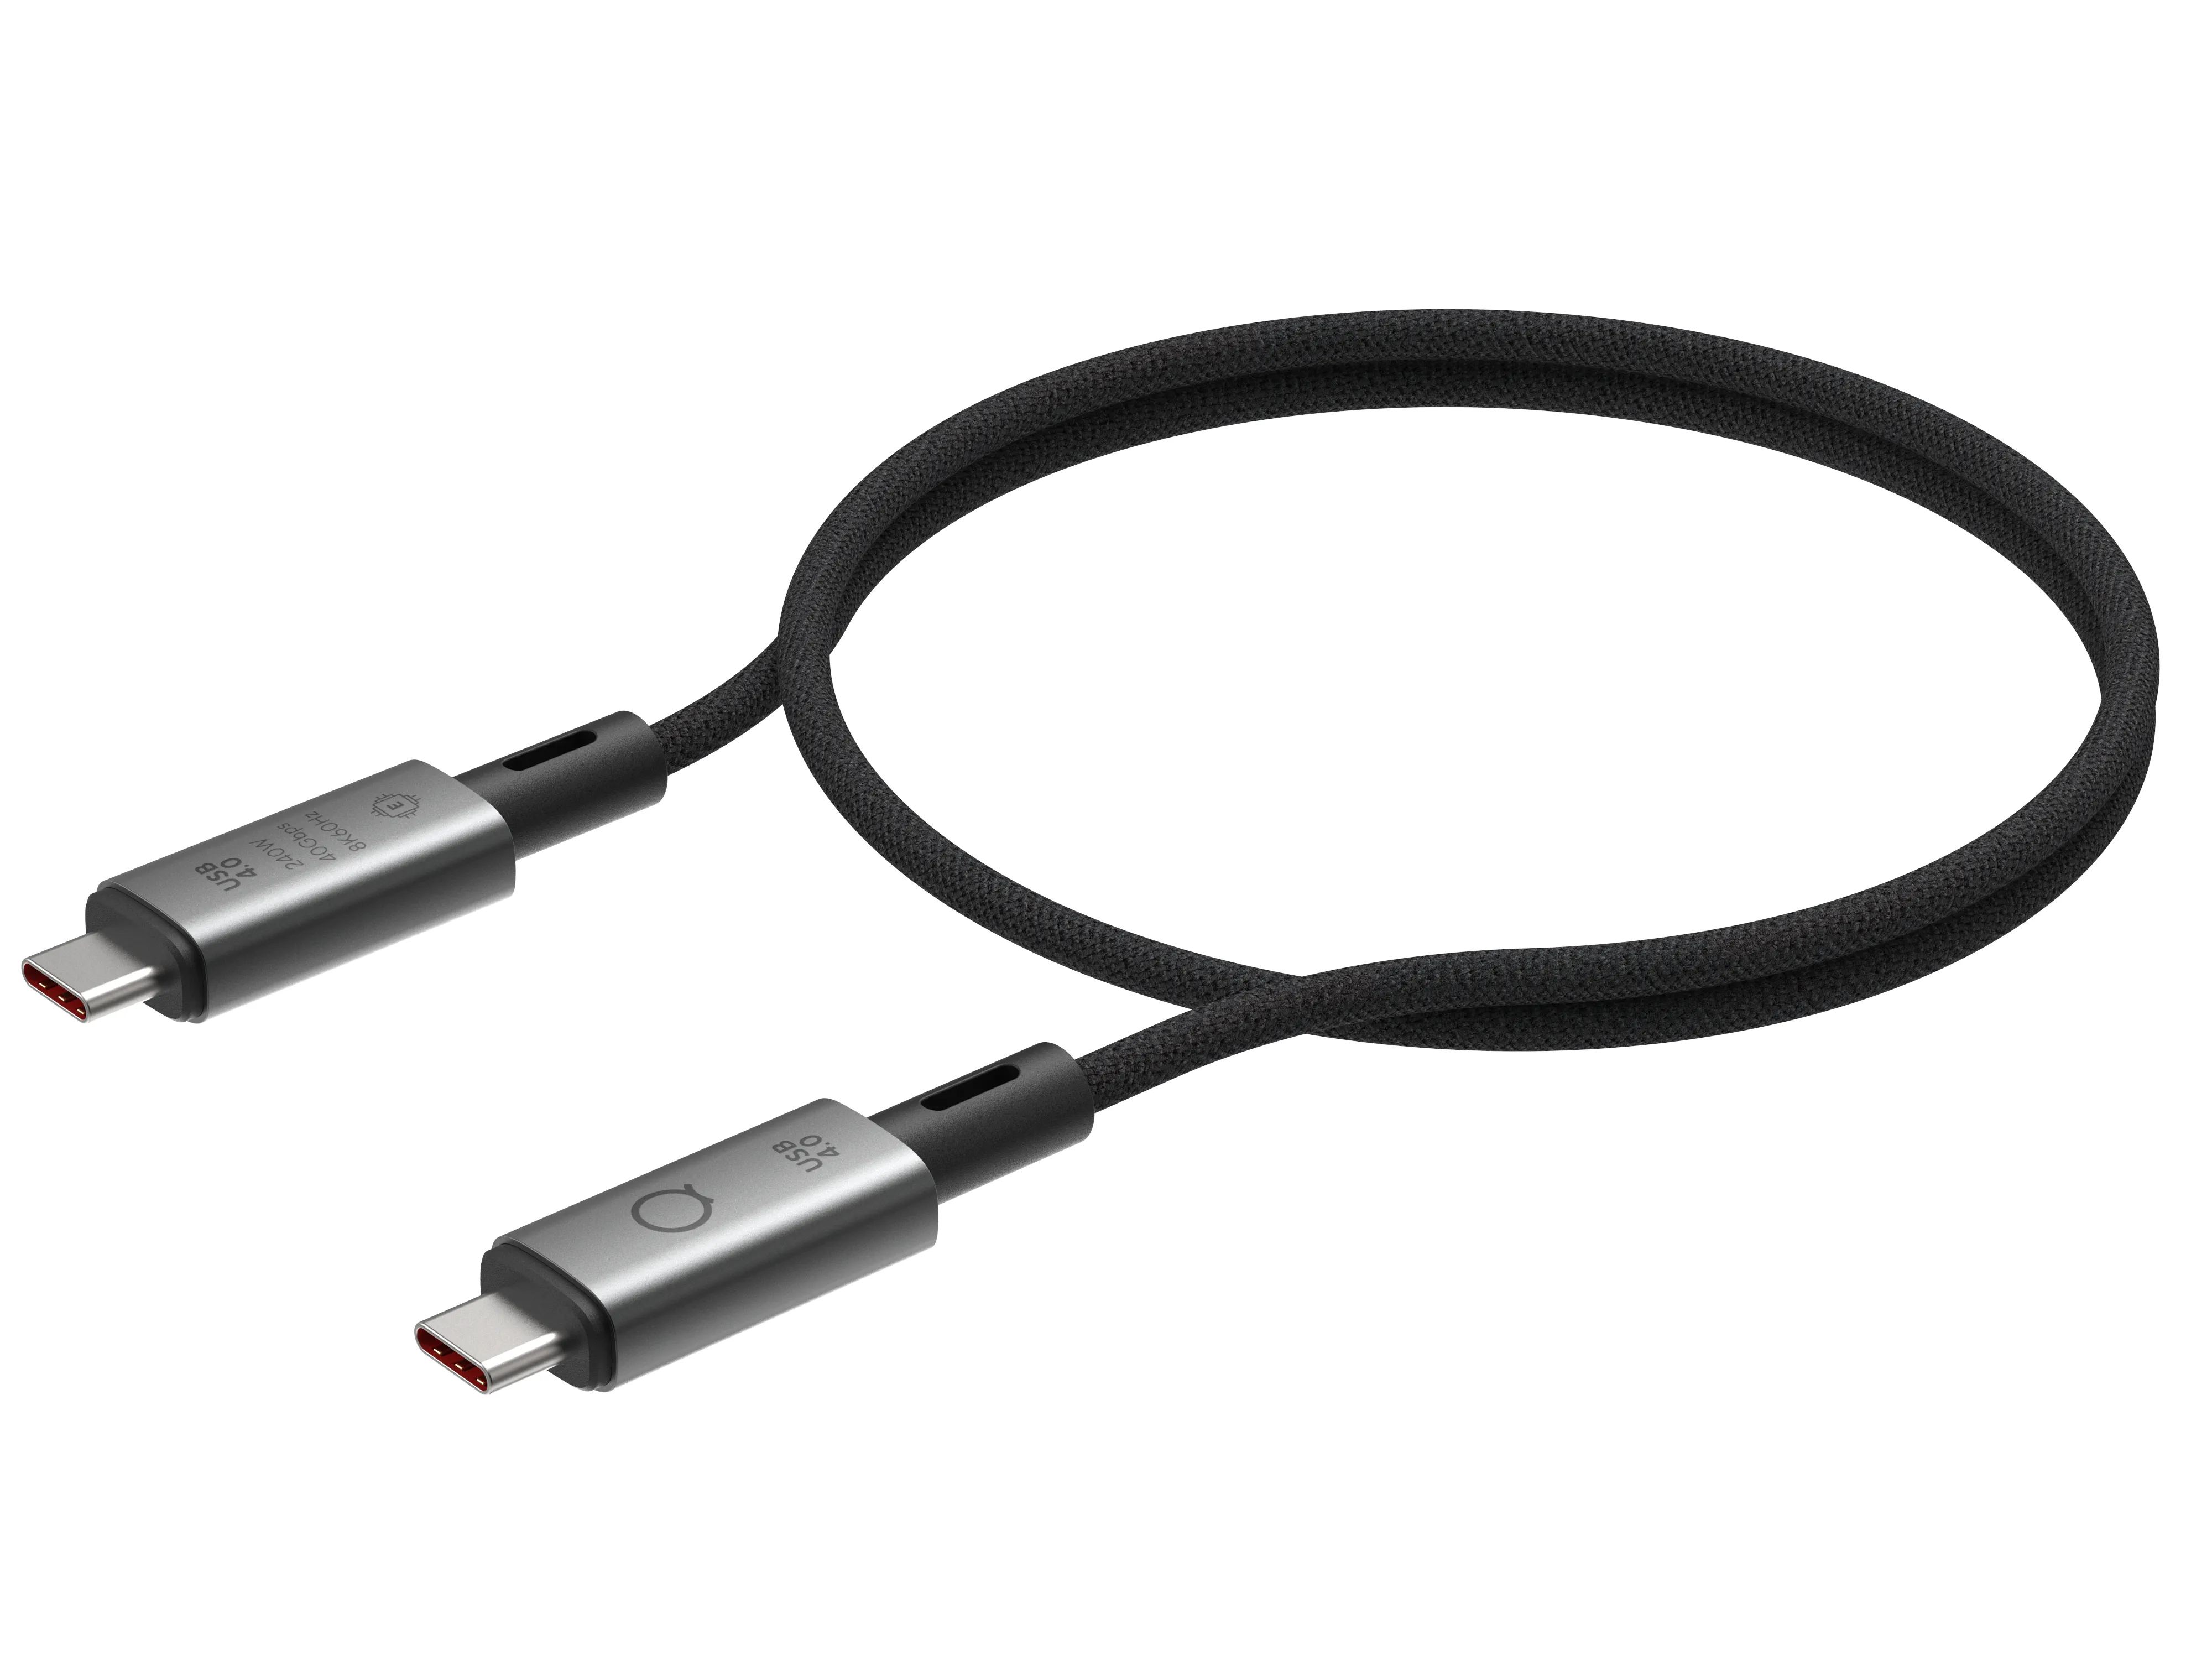 Vente LINQ byELEMENTS USB4 PRO Cable -1.0m LINQ byELEMENTS au meilleur prix - visuel 6